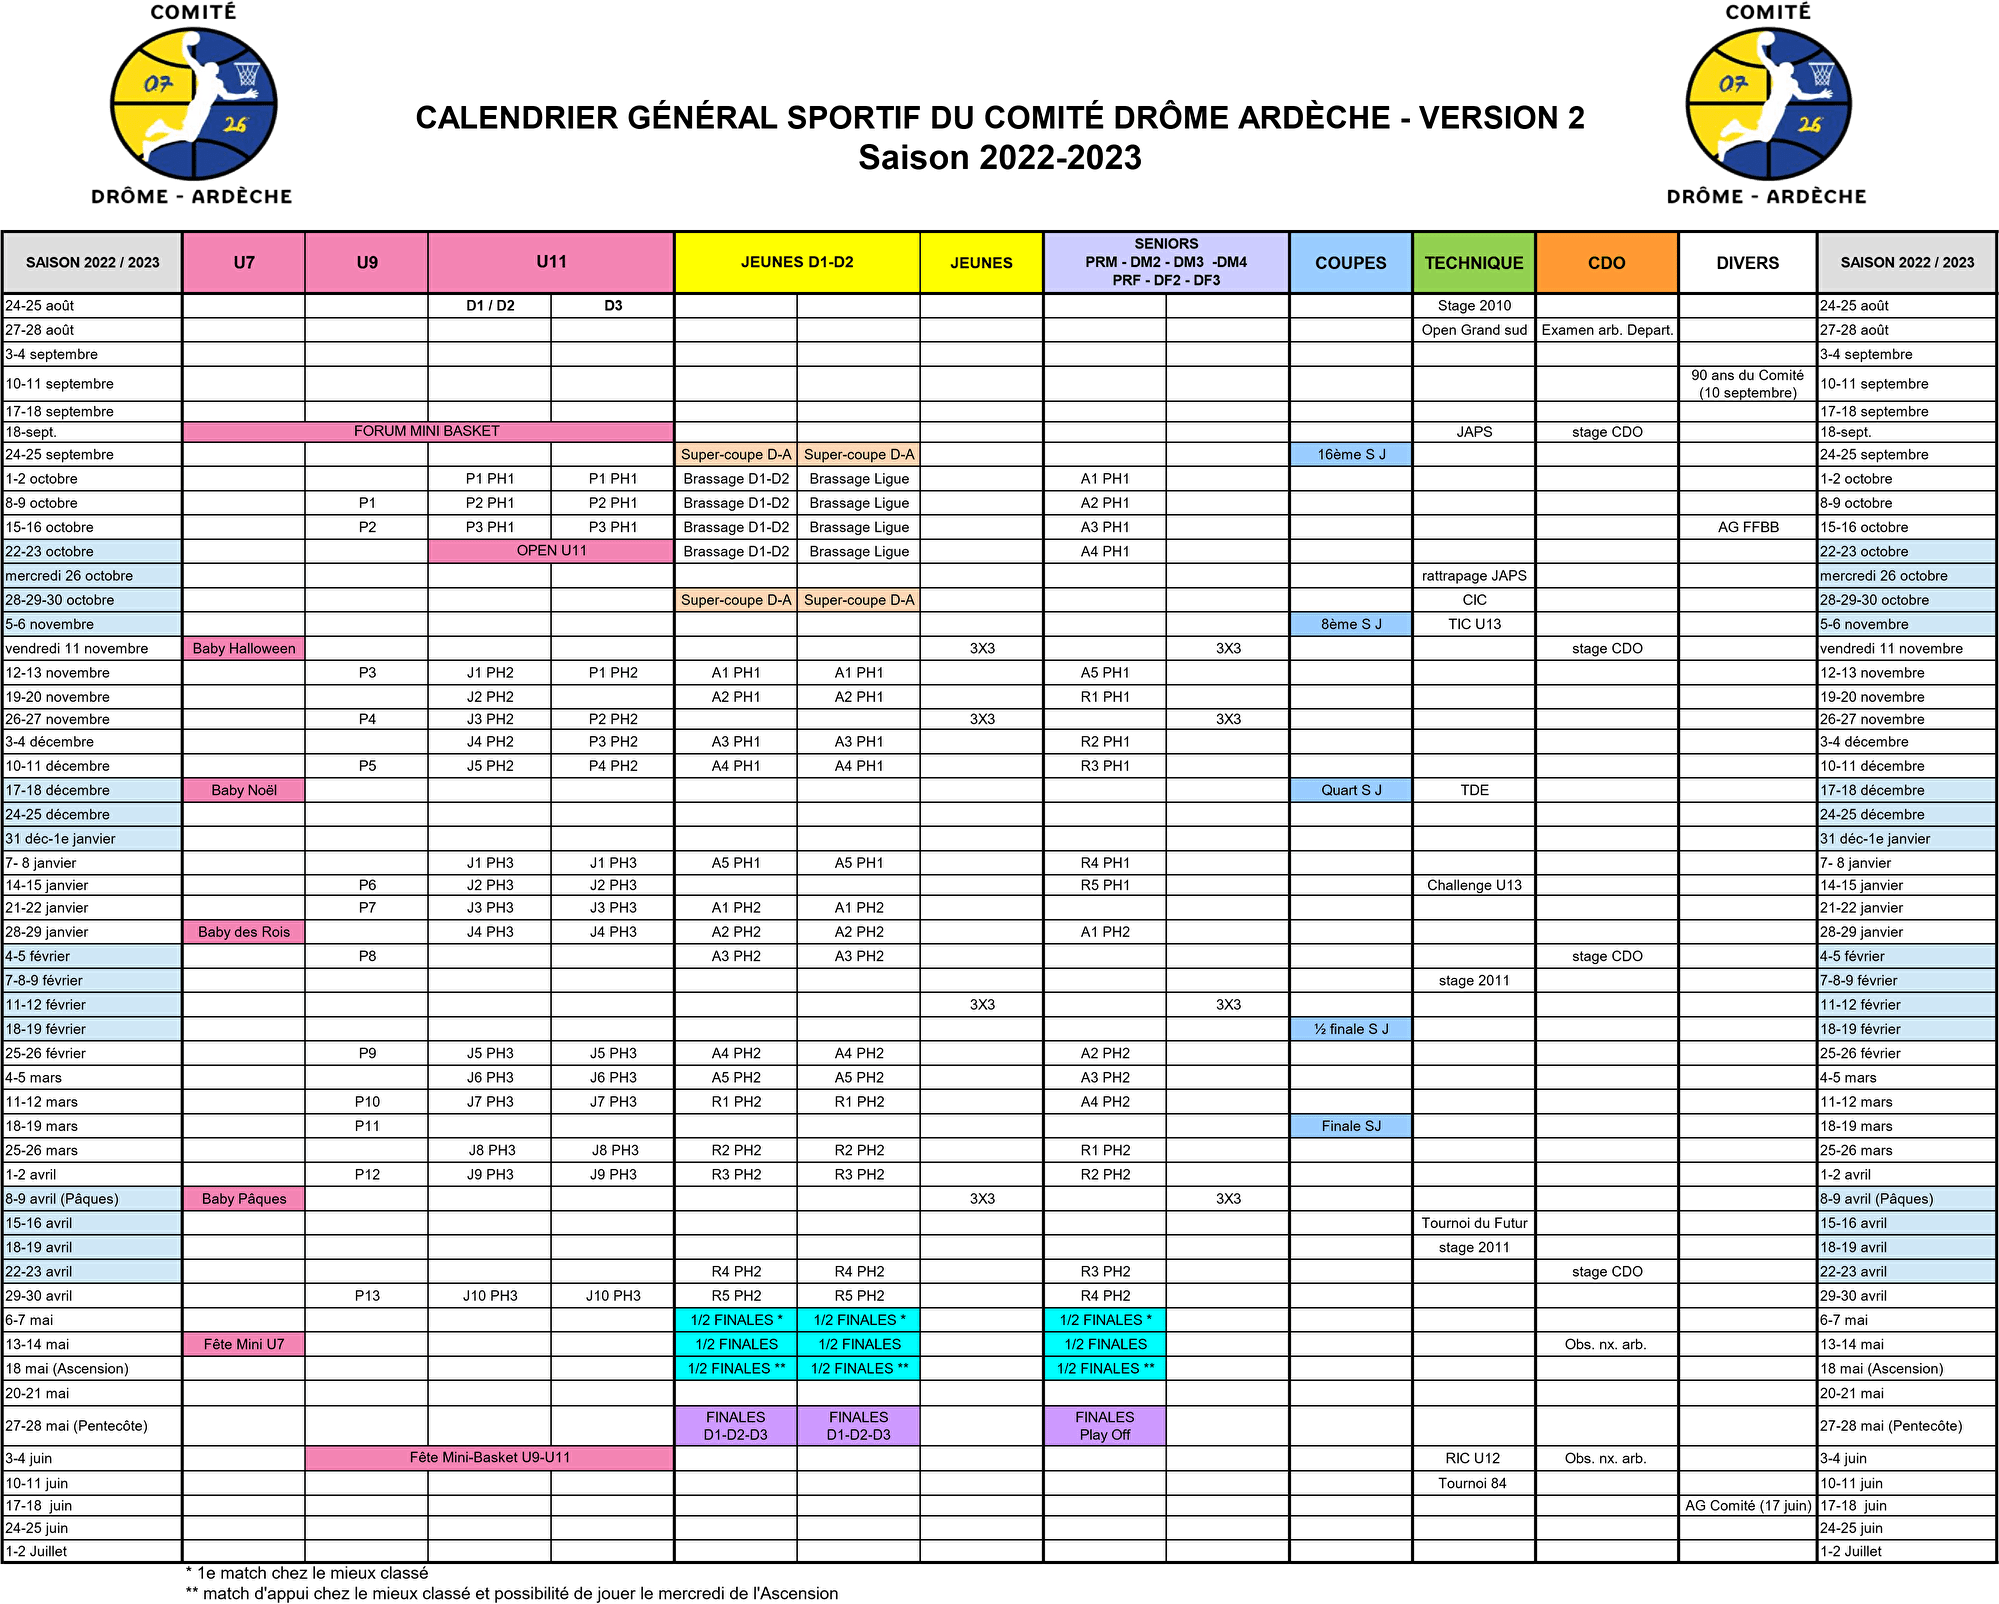 COMITE - Calendrier sportif 2022-2023 - version 2